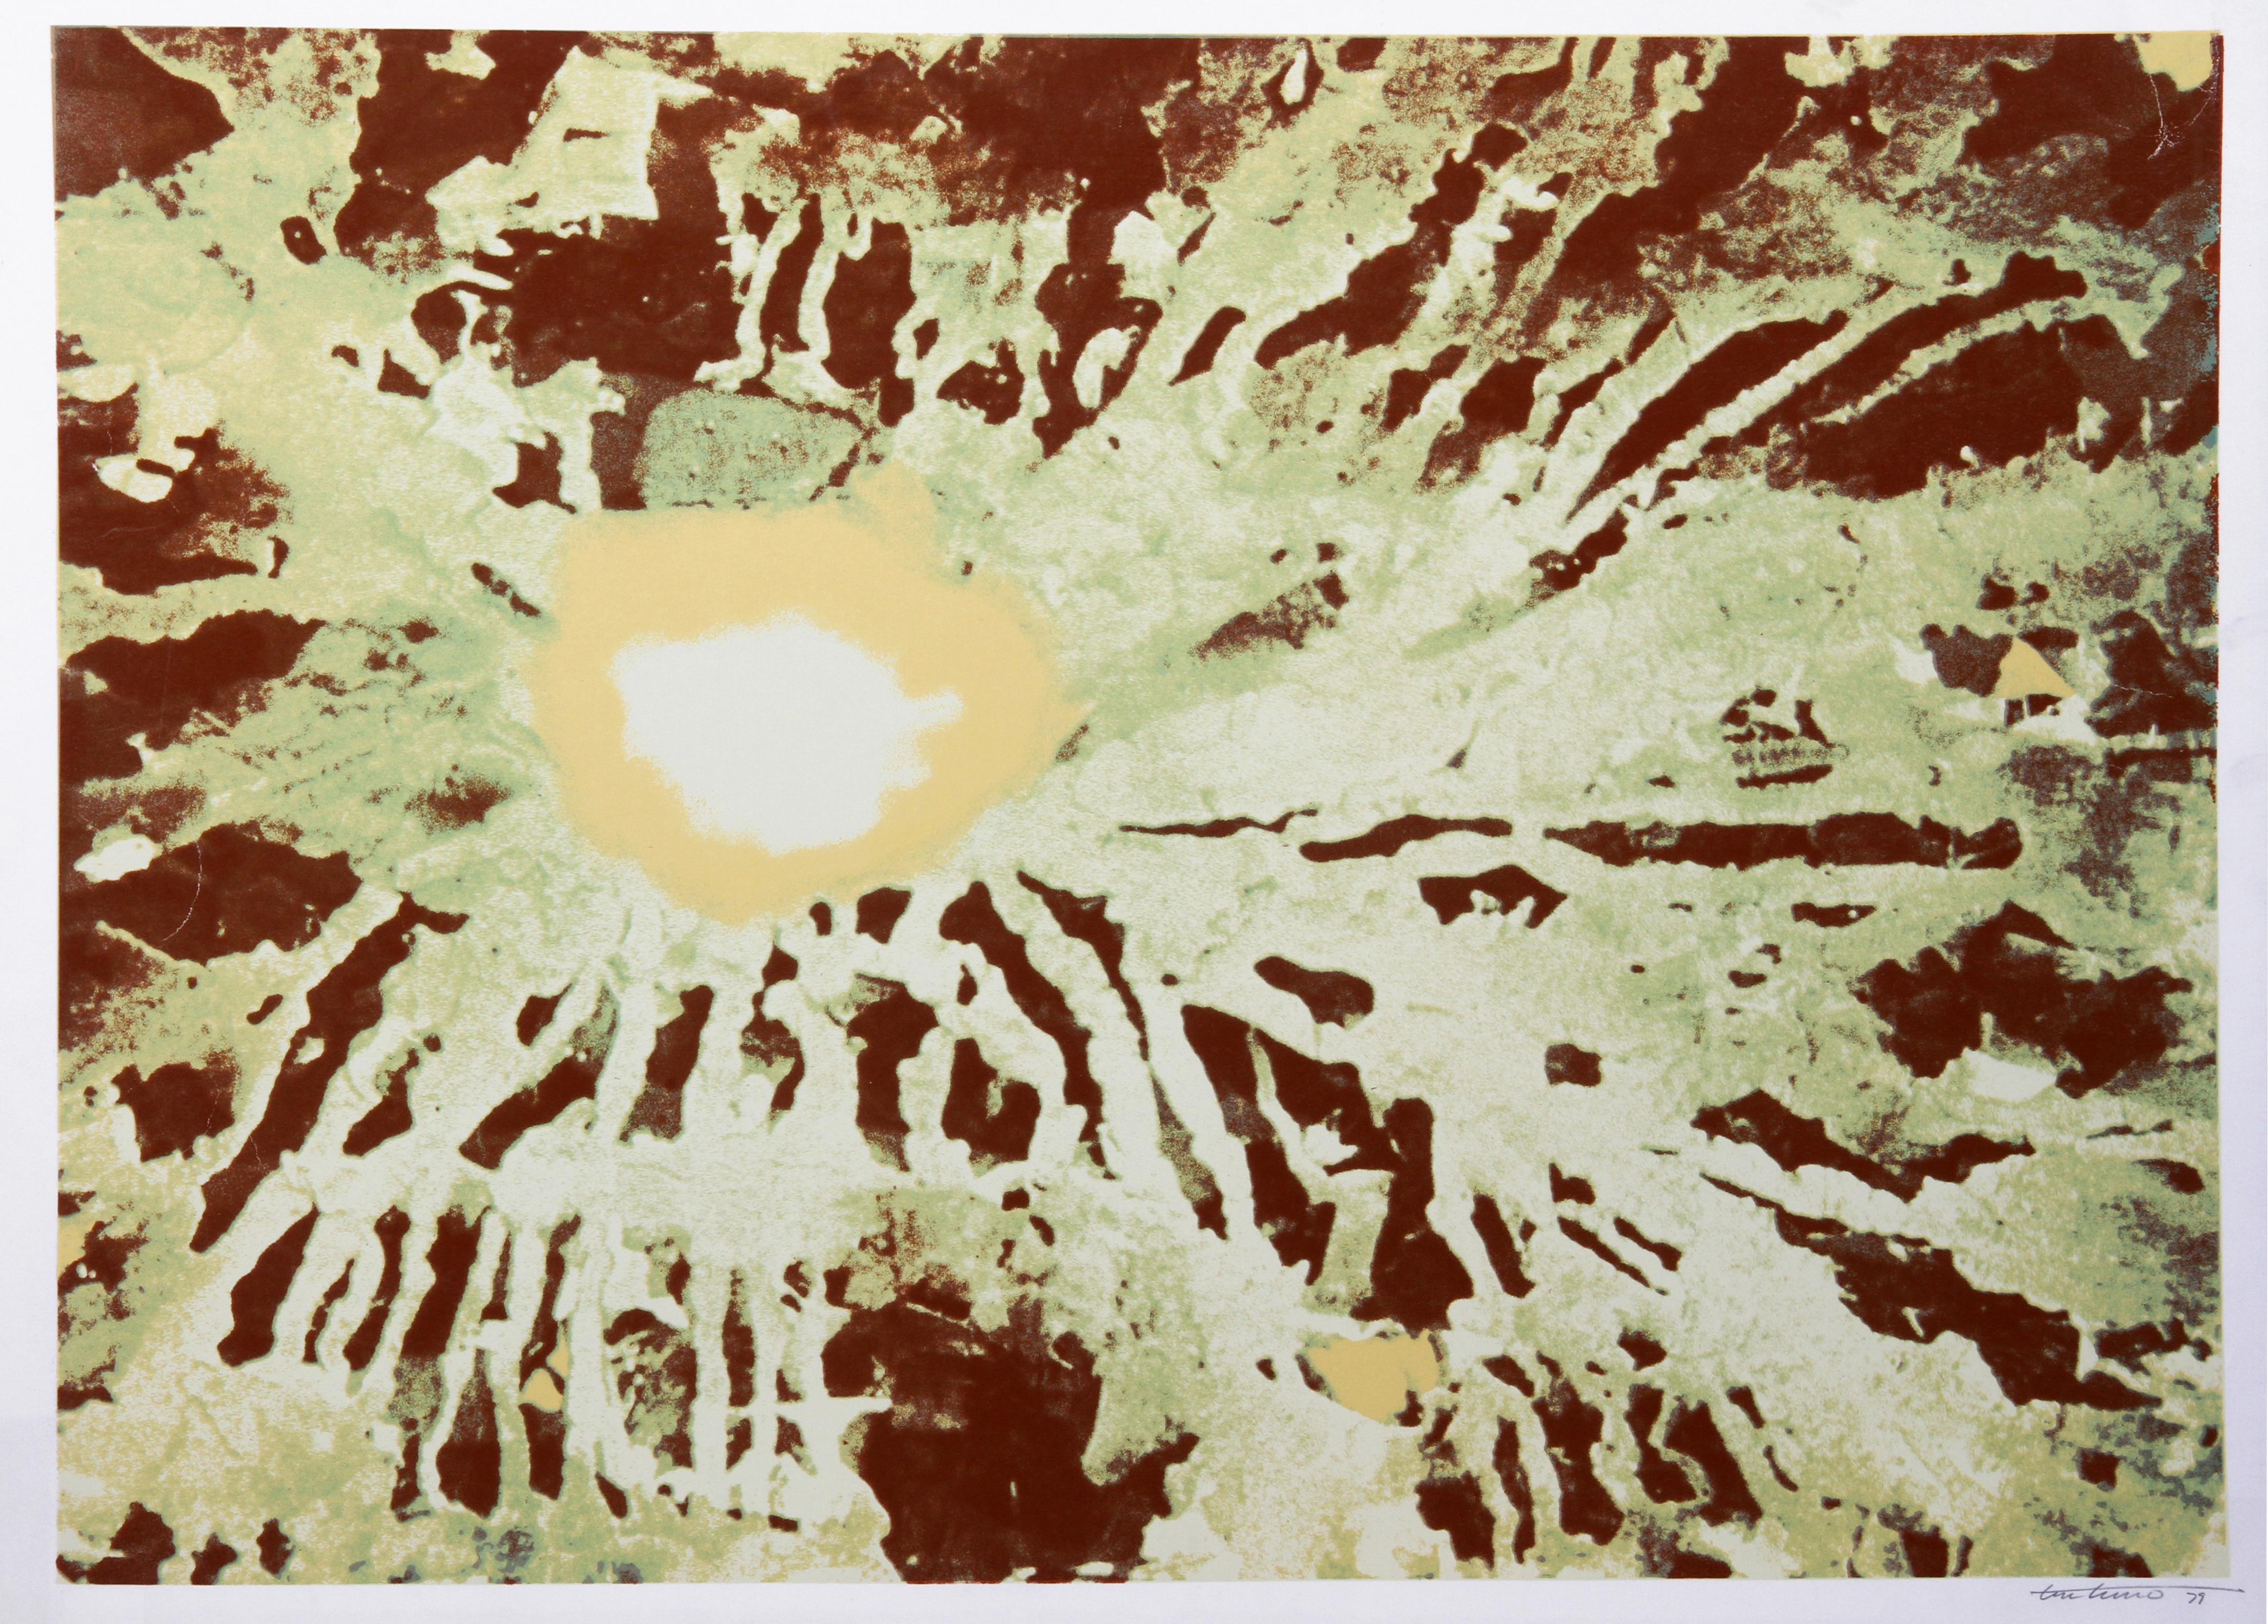 Sous la surface de Venise
Domenick Turturro, américain (1936-2002)
Date : 1980
Sérigraphie, signée et numérotée au crayon.
Edition de AP 30
Taille de l'image : 24 x 34 pouces
Taille : 66,04 cm x 91,44 cm (26 in. x 36 in.)